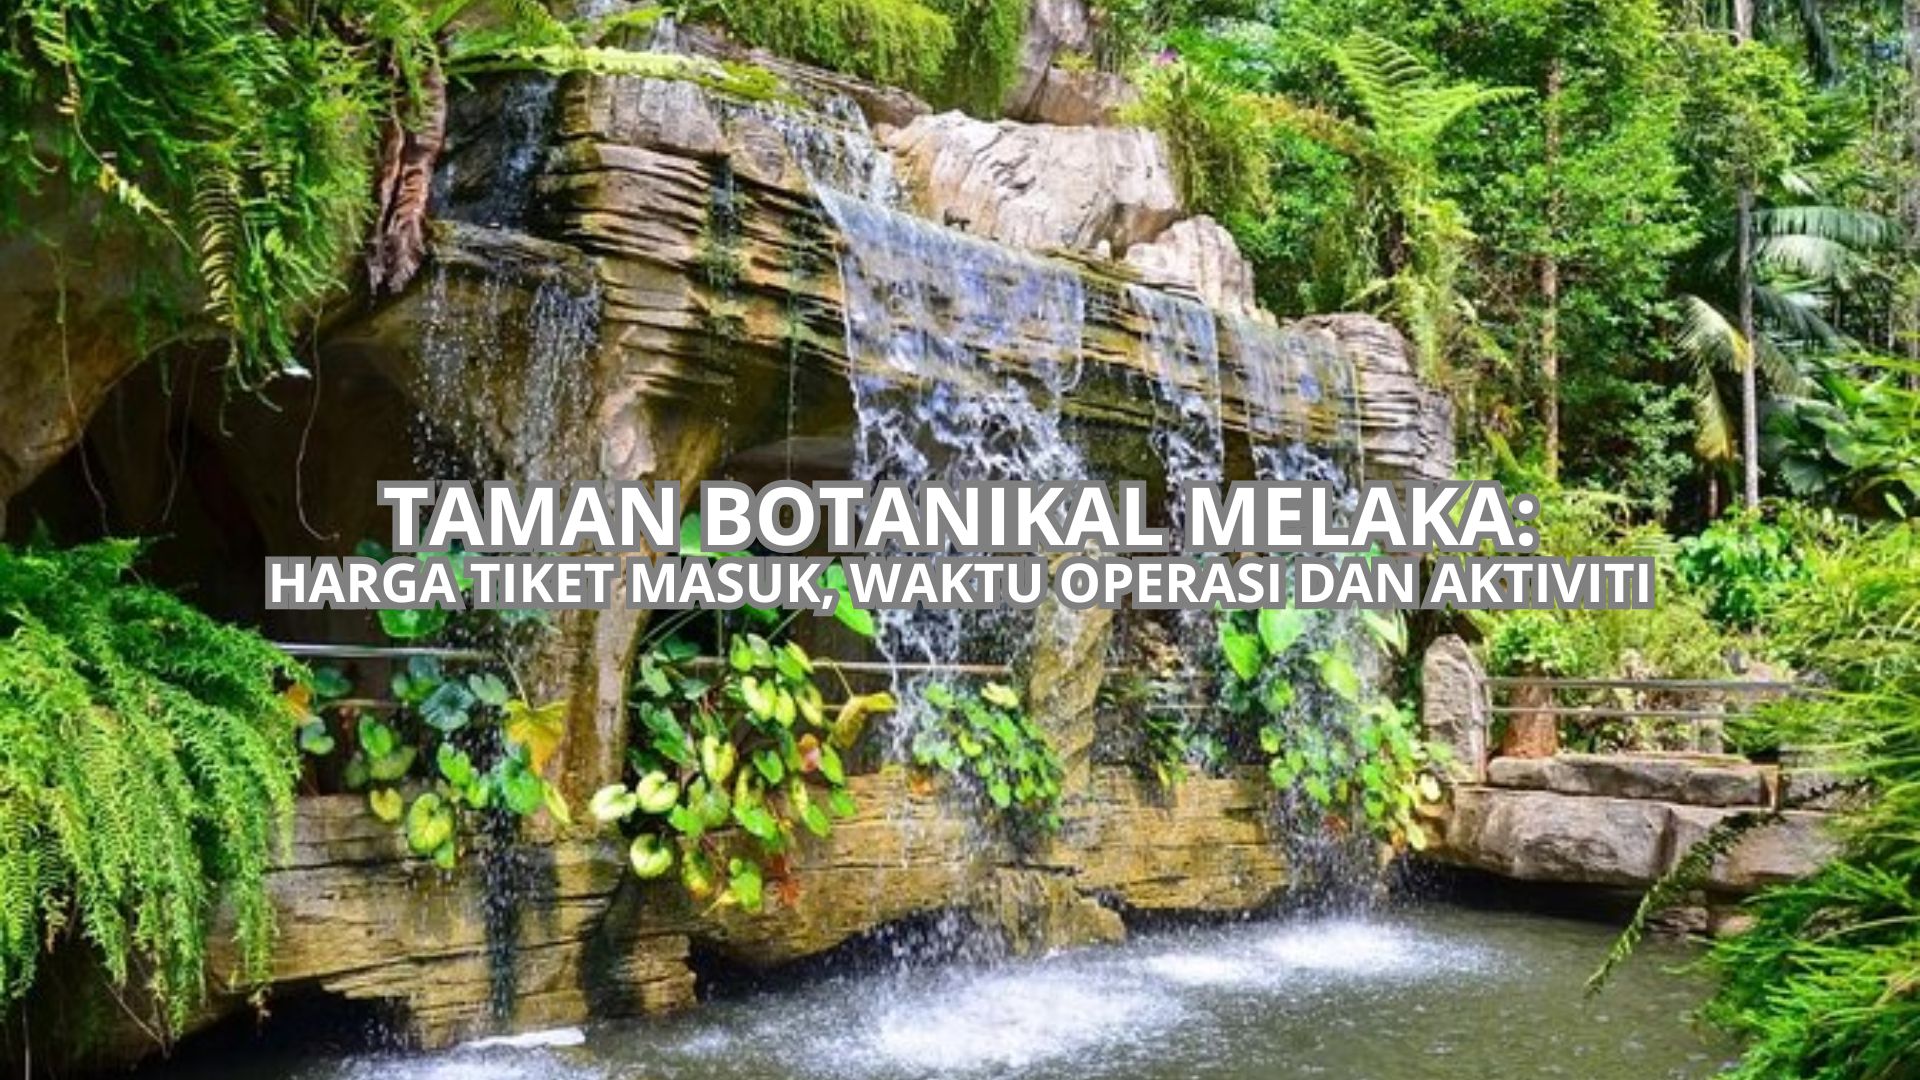 Taman Botanikal Melaka Cover